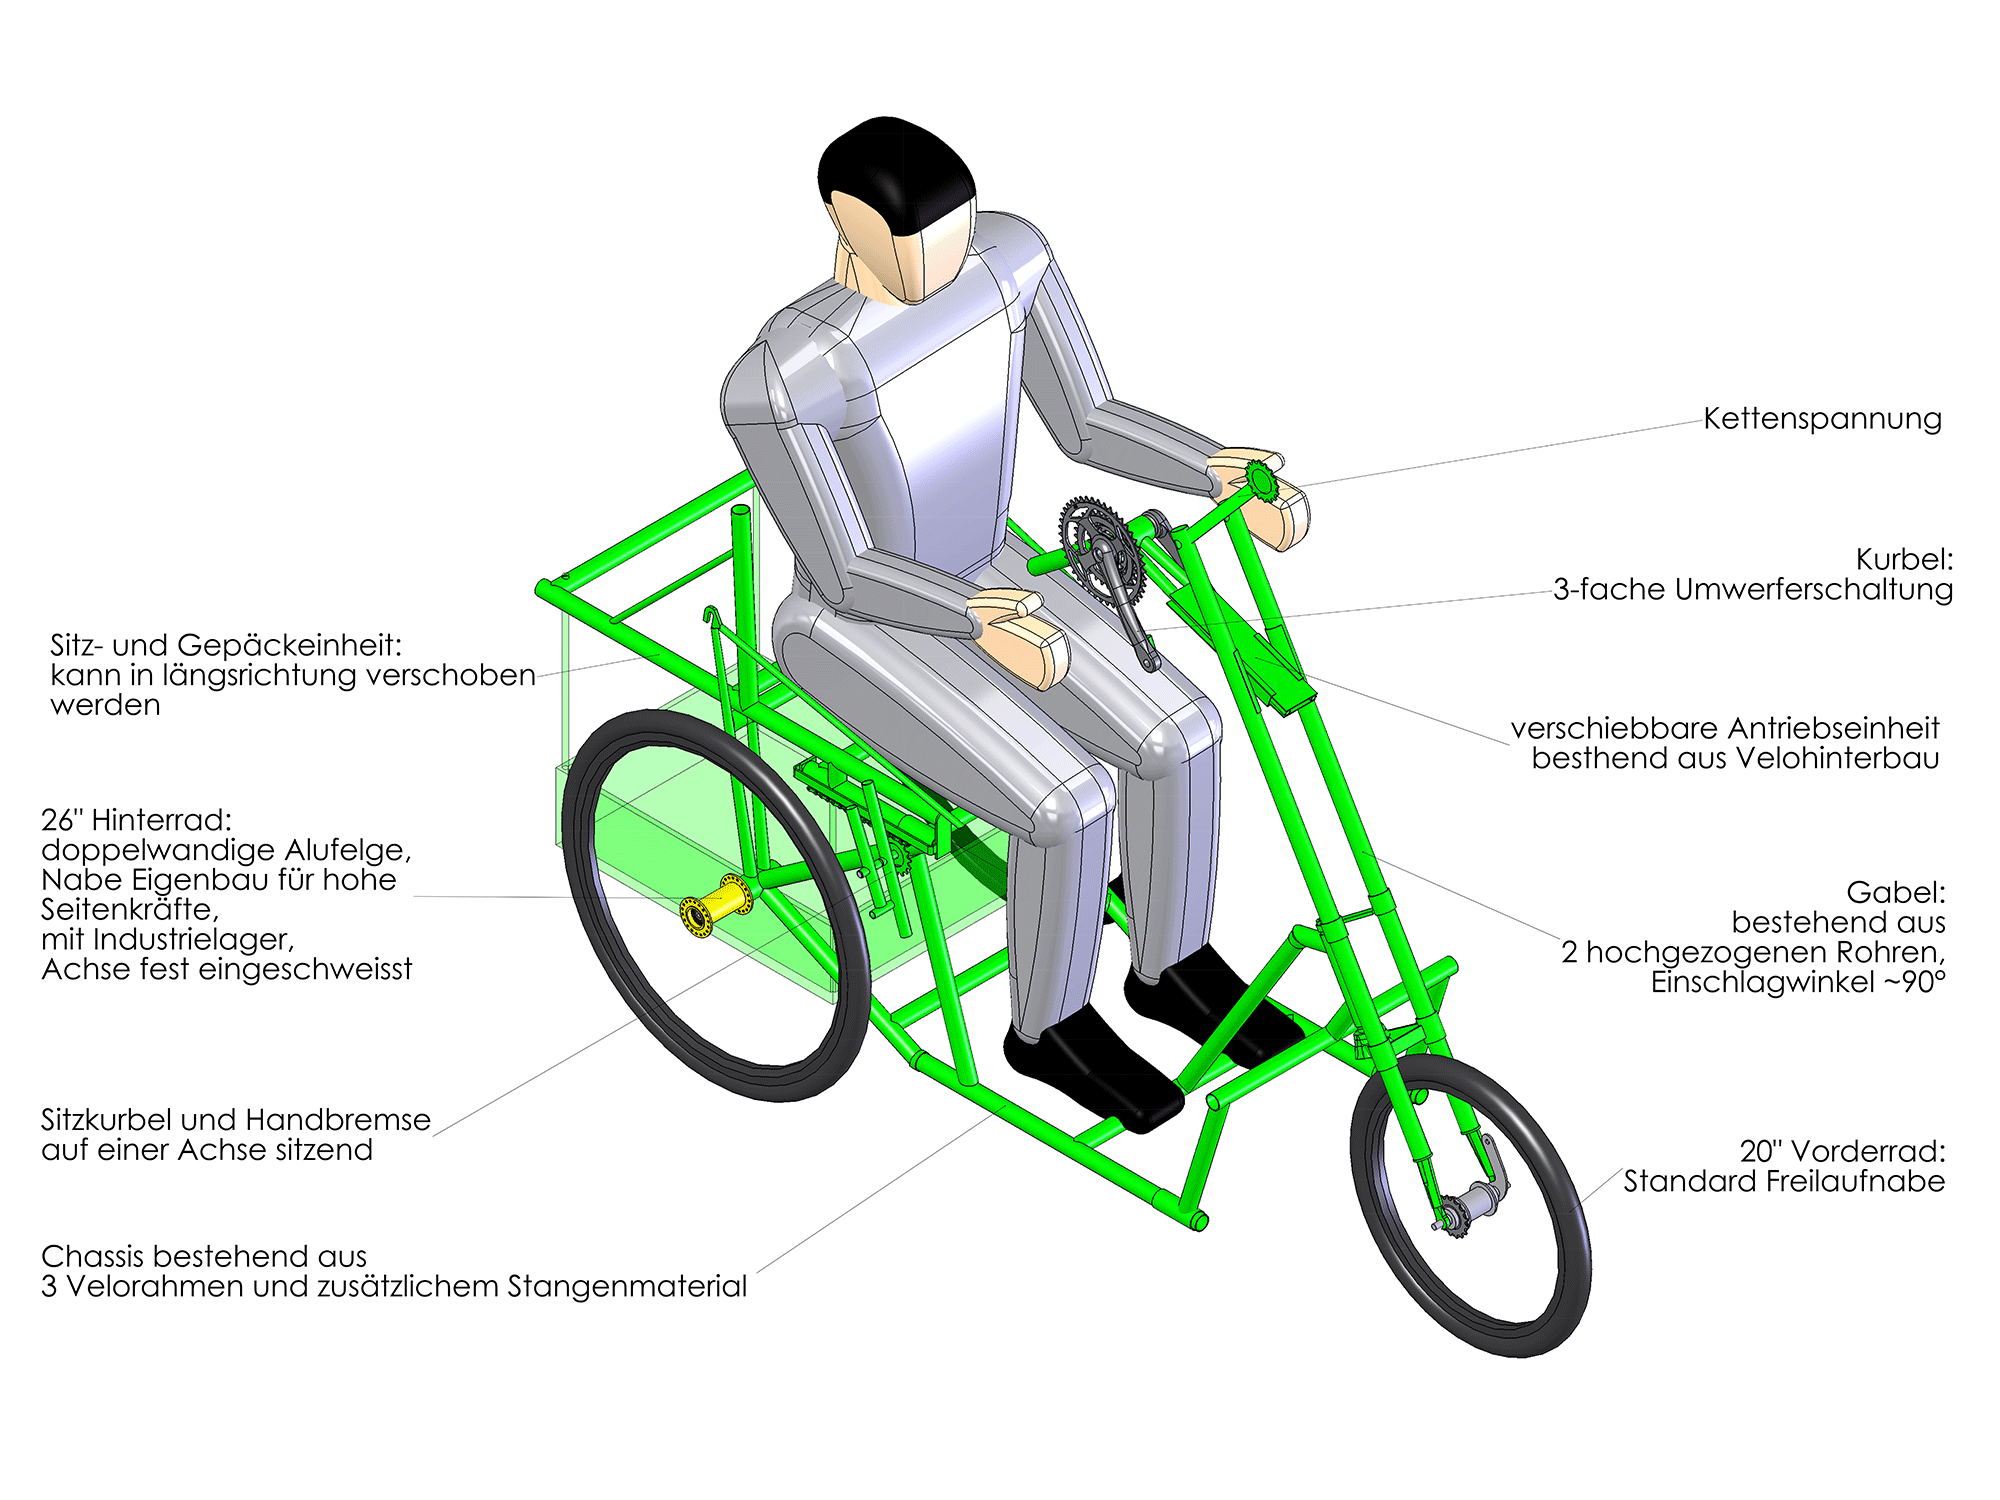 voiturette basierend auf drei Fahrradrahmen, einstellbarer Antrieb, Umwerferschaltung, Einschlag > 180°